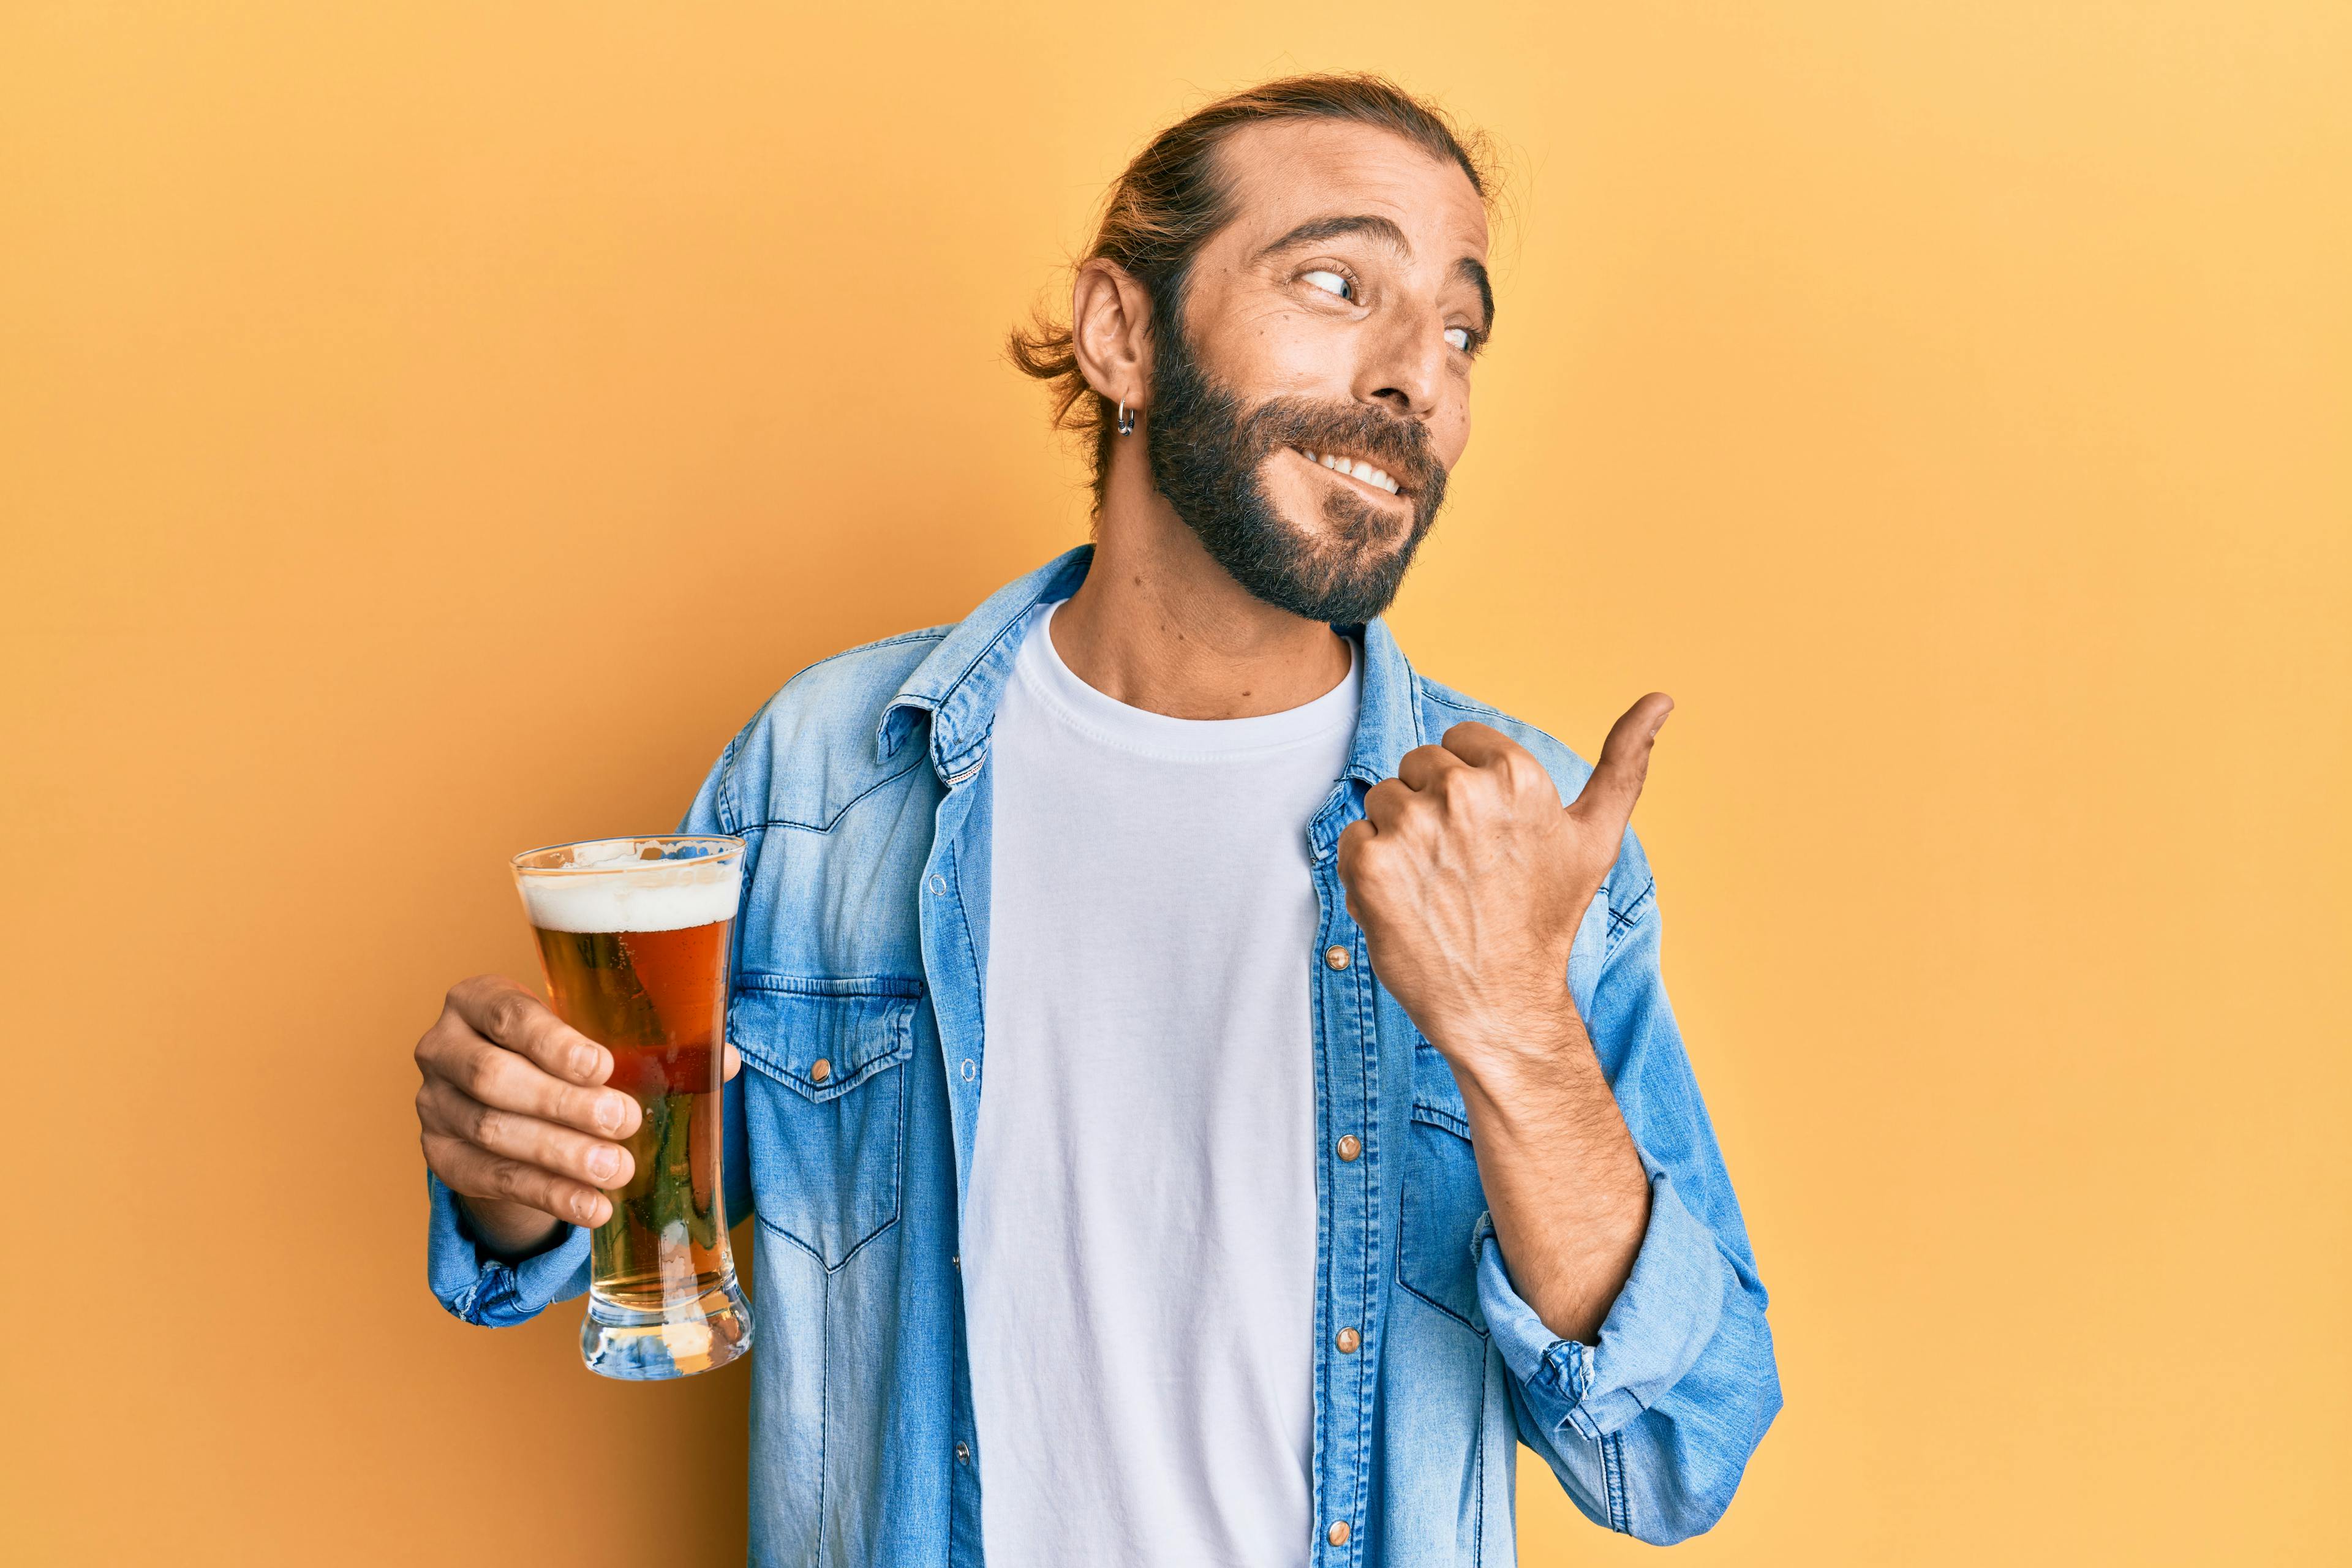 Ein Mann hält ein Bier in der Hand. Er hat ein freches Lächeln auf seinem Gesicht